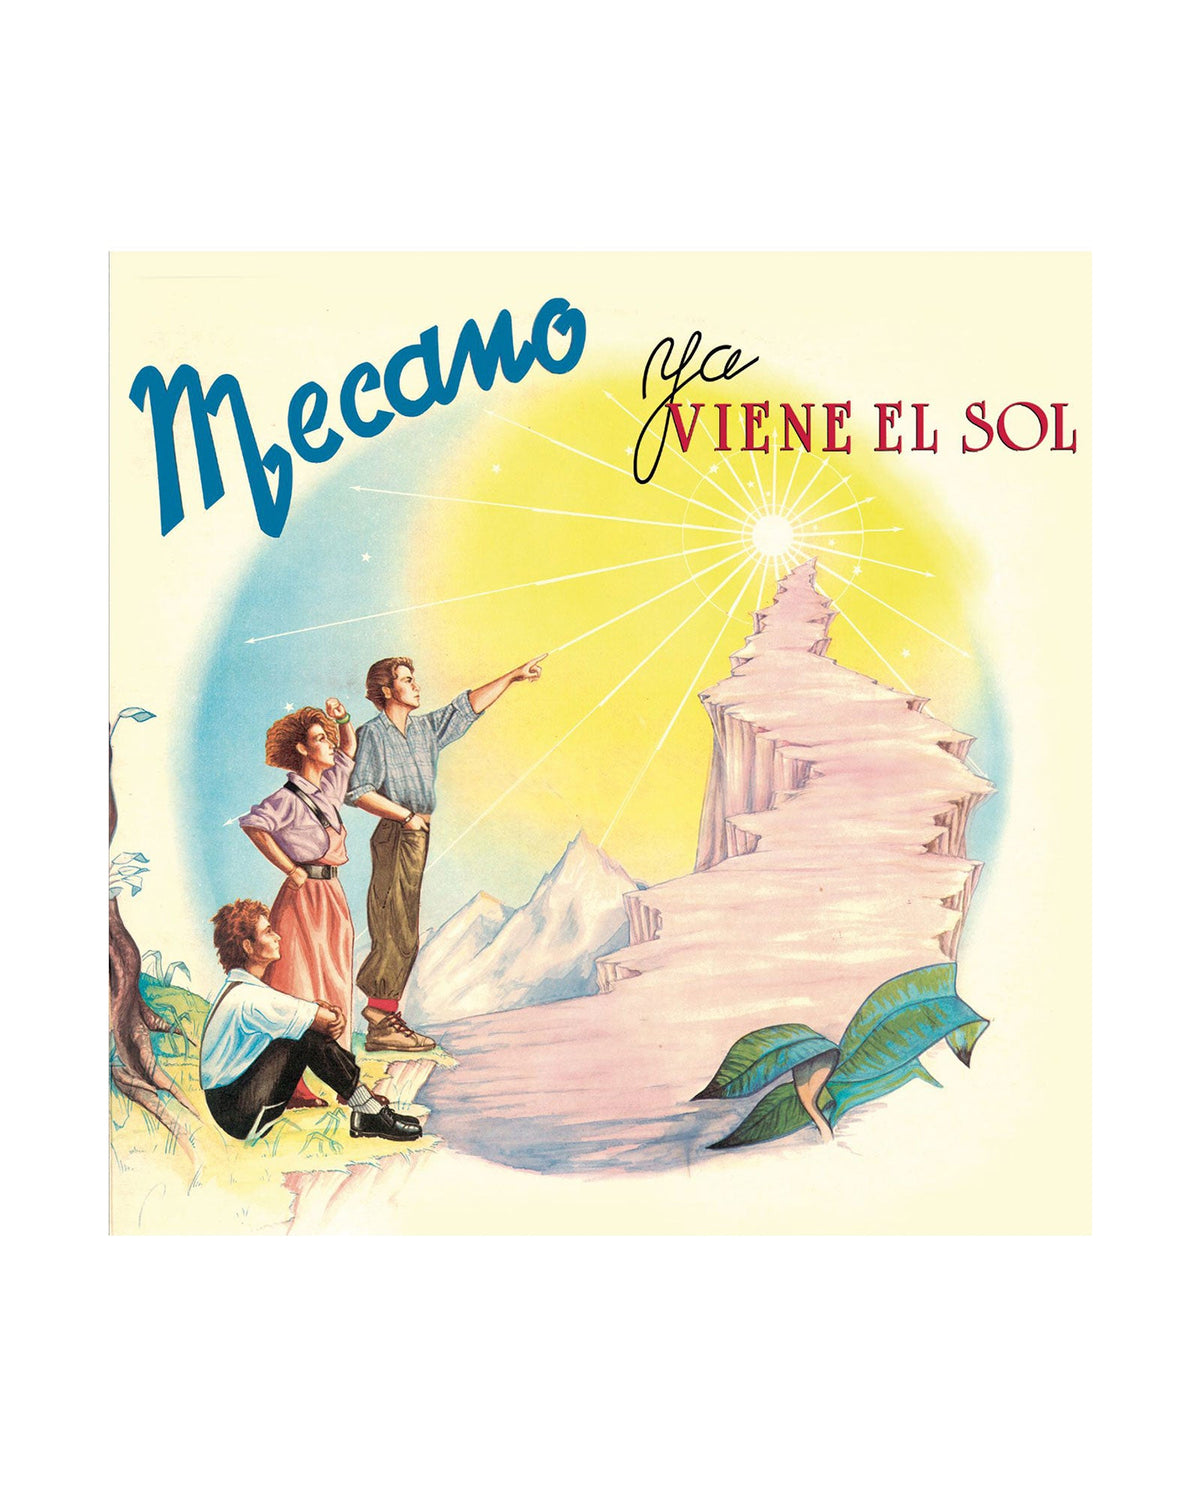 Mecano - CD "Ya viene el sol" - D2fy · Rocktud - D2fy